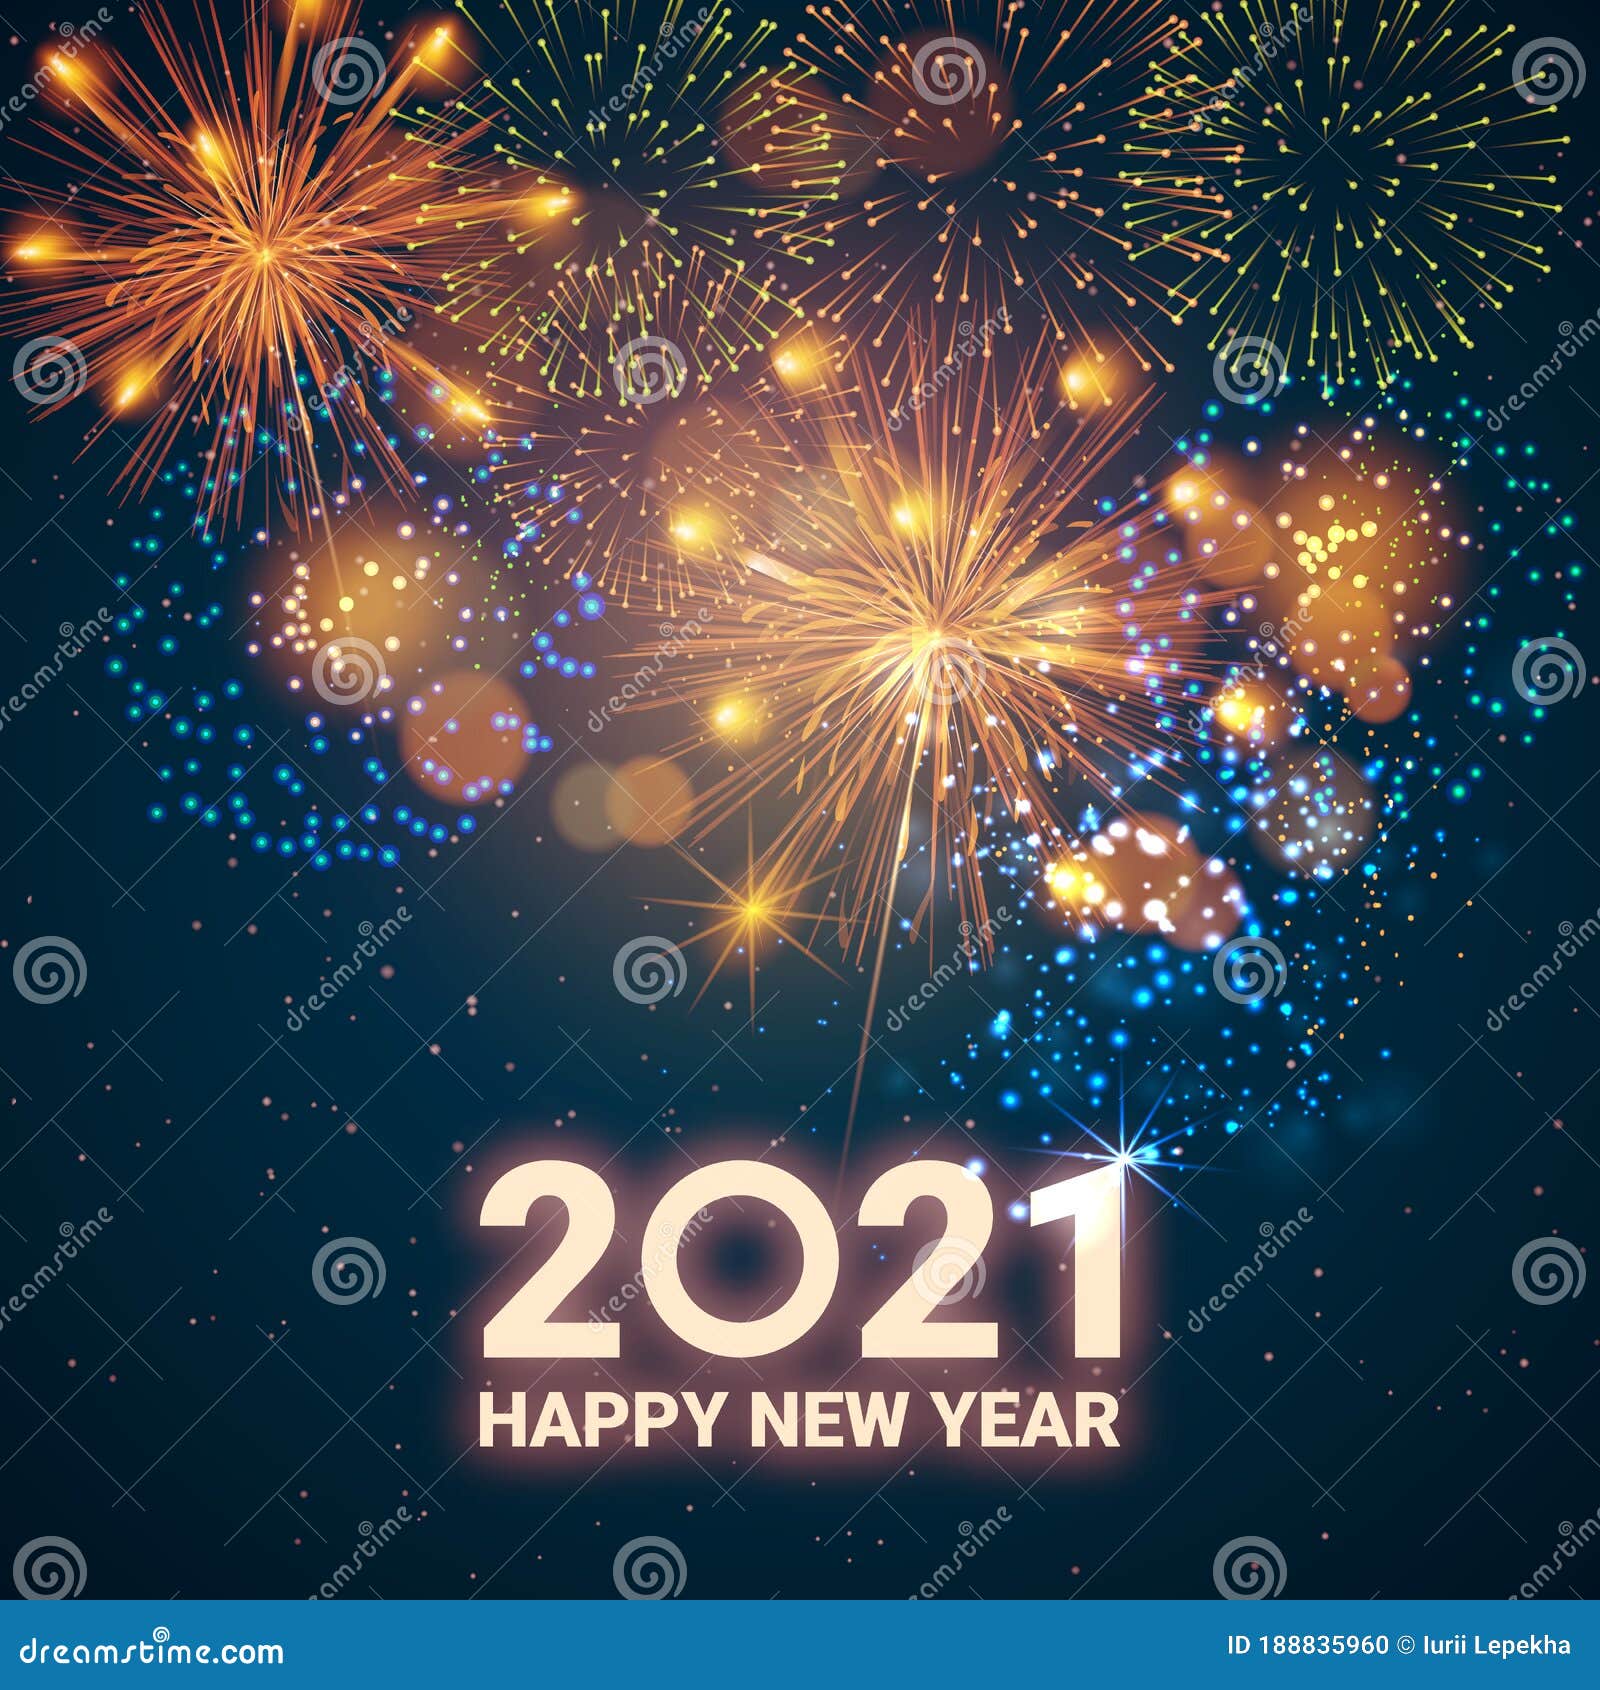 Featured image of post Feliz 2021 Imagem De Fim De Ano 2021 : Seus amigos ficarão felizes em receber uma mensagem carinhosa na noite da virada.